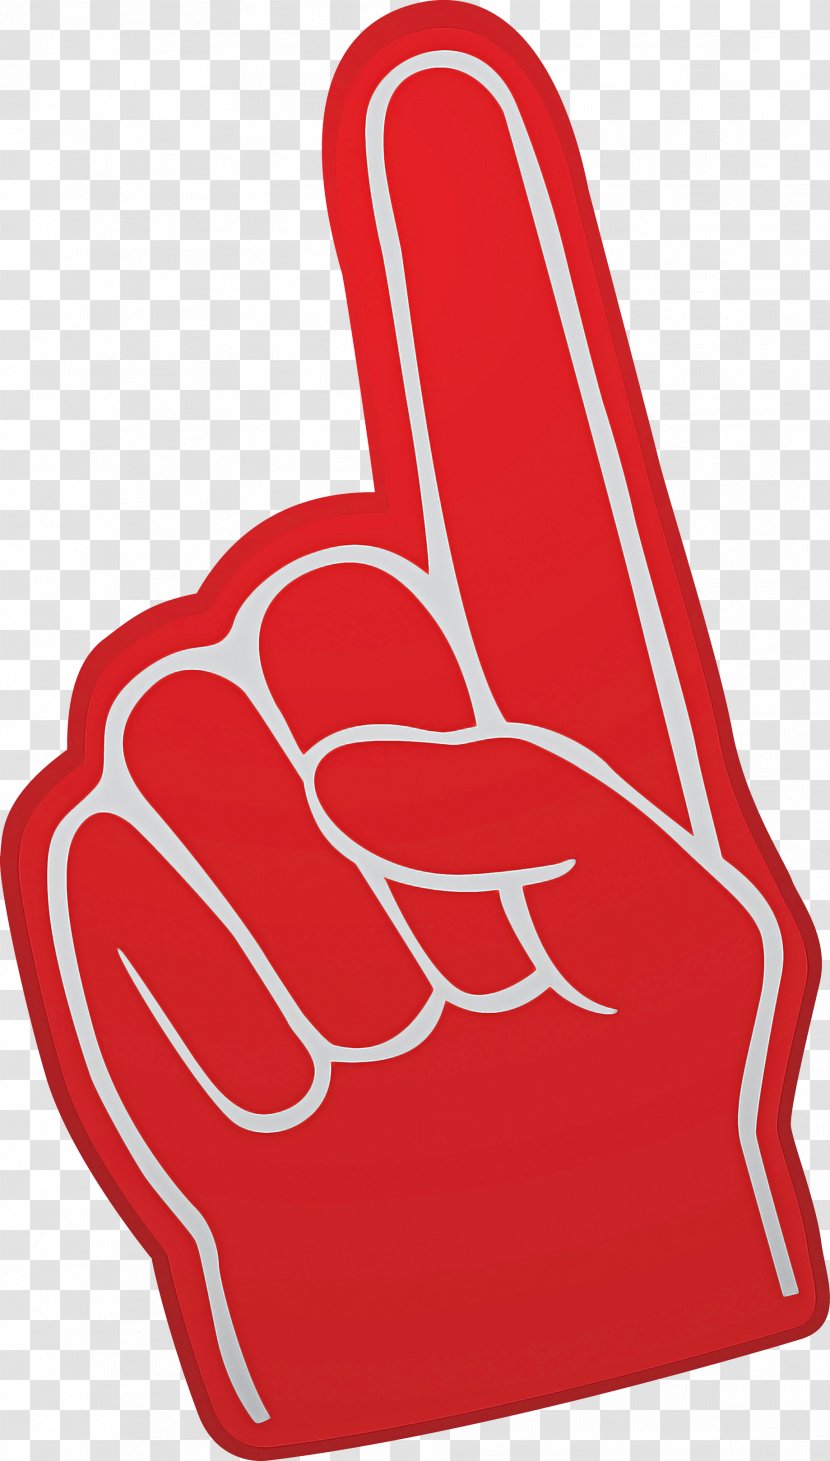 Red Hand Finger Gesture Thumb - V Sign Transparent PNG